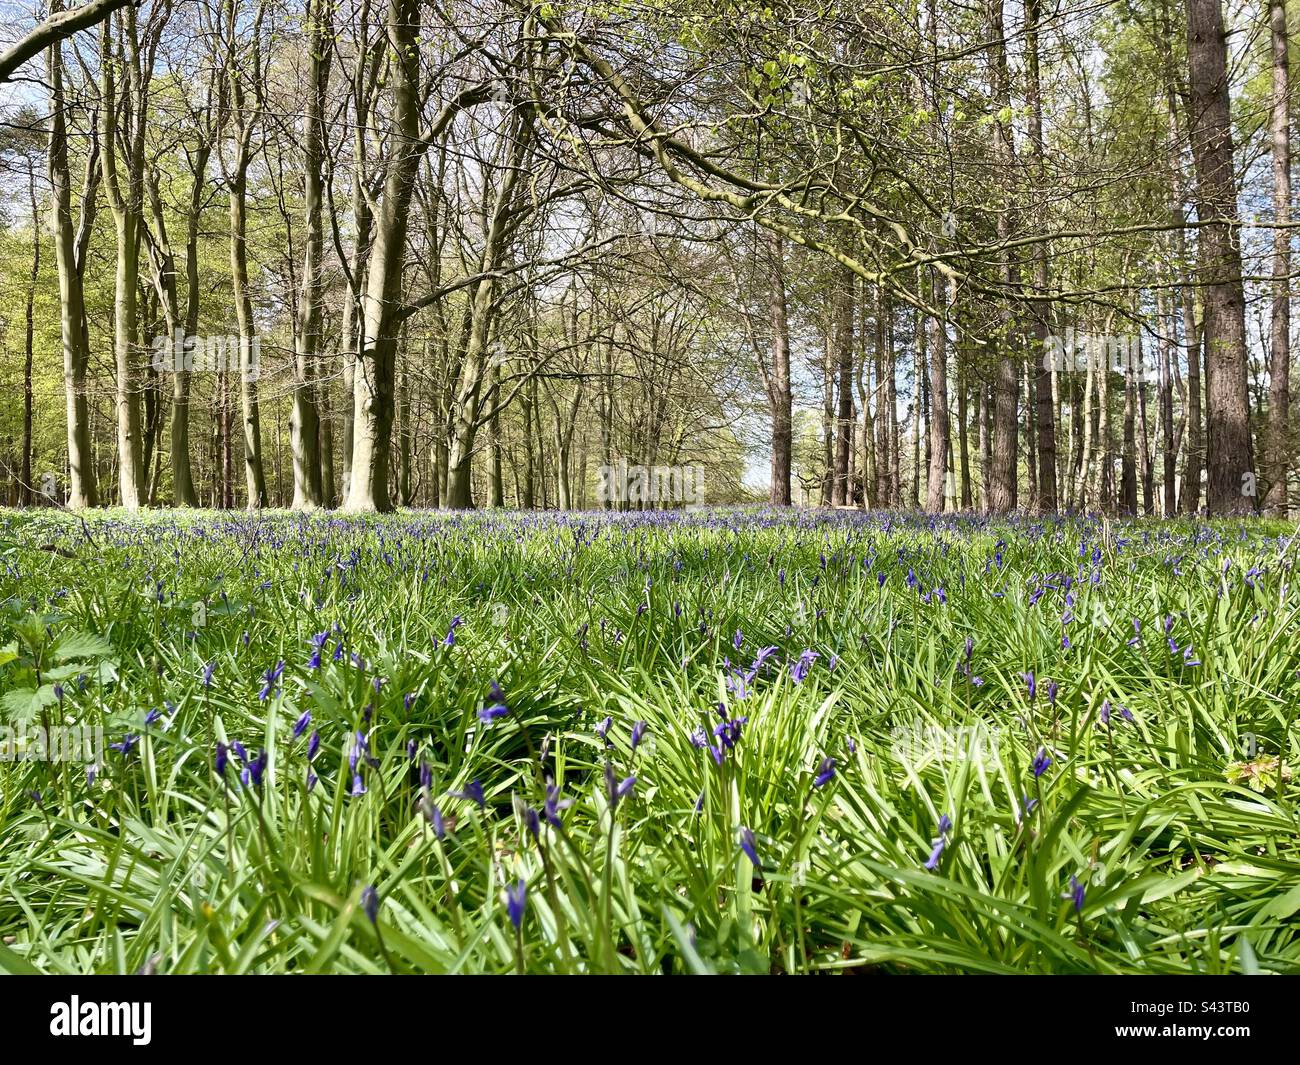 Im Wald wuchsen Blauglocken. Die Blauen Glocken werden auch als „Feenblumen“, „Hexenhülsen“ und „Kuckucksstiefel“ bezeichnet. Stockfoto